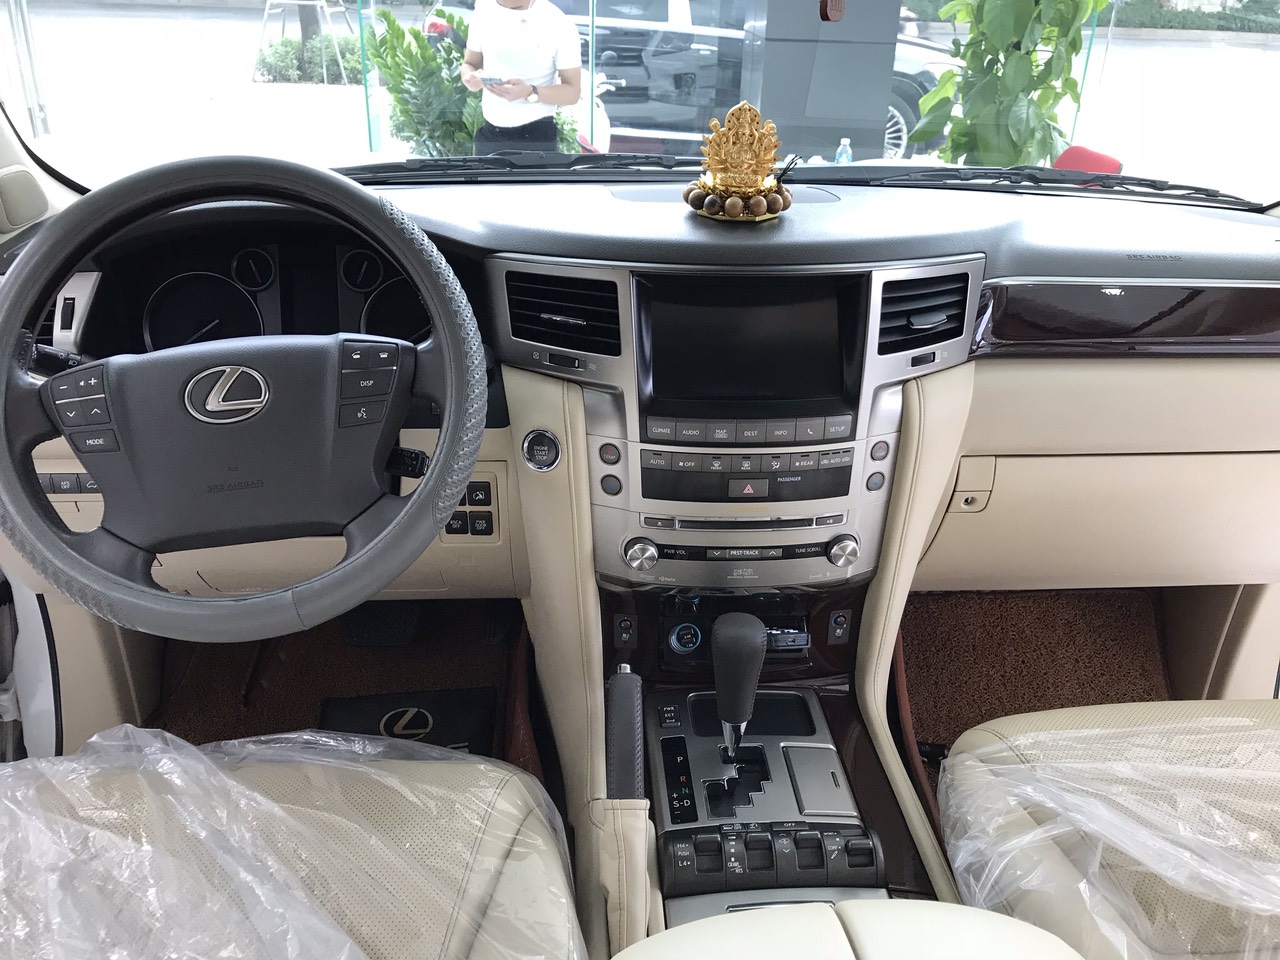 Bán chiếc Lexus LX570 xuất Mỹ màu trắng Model 2014 xe đăng ký tên cá nhân biển Hà nội đẹp-6